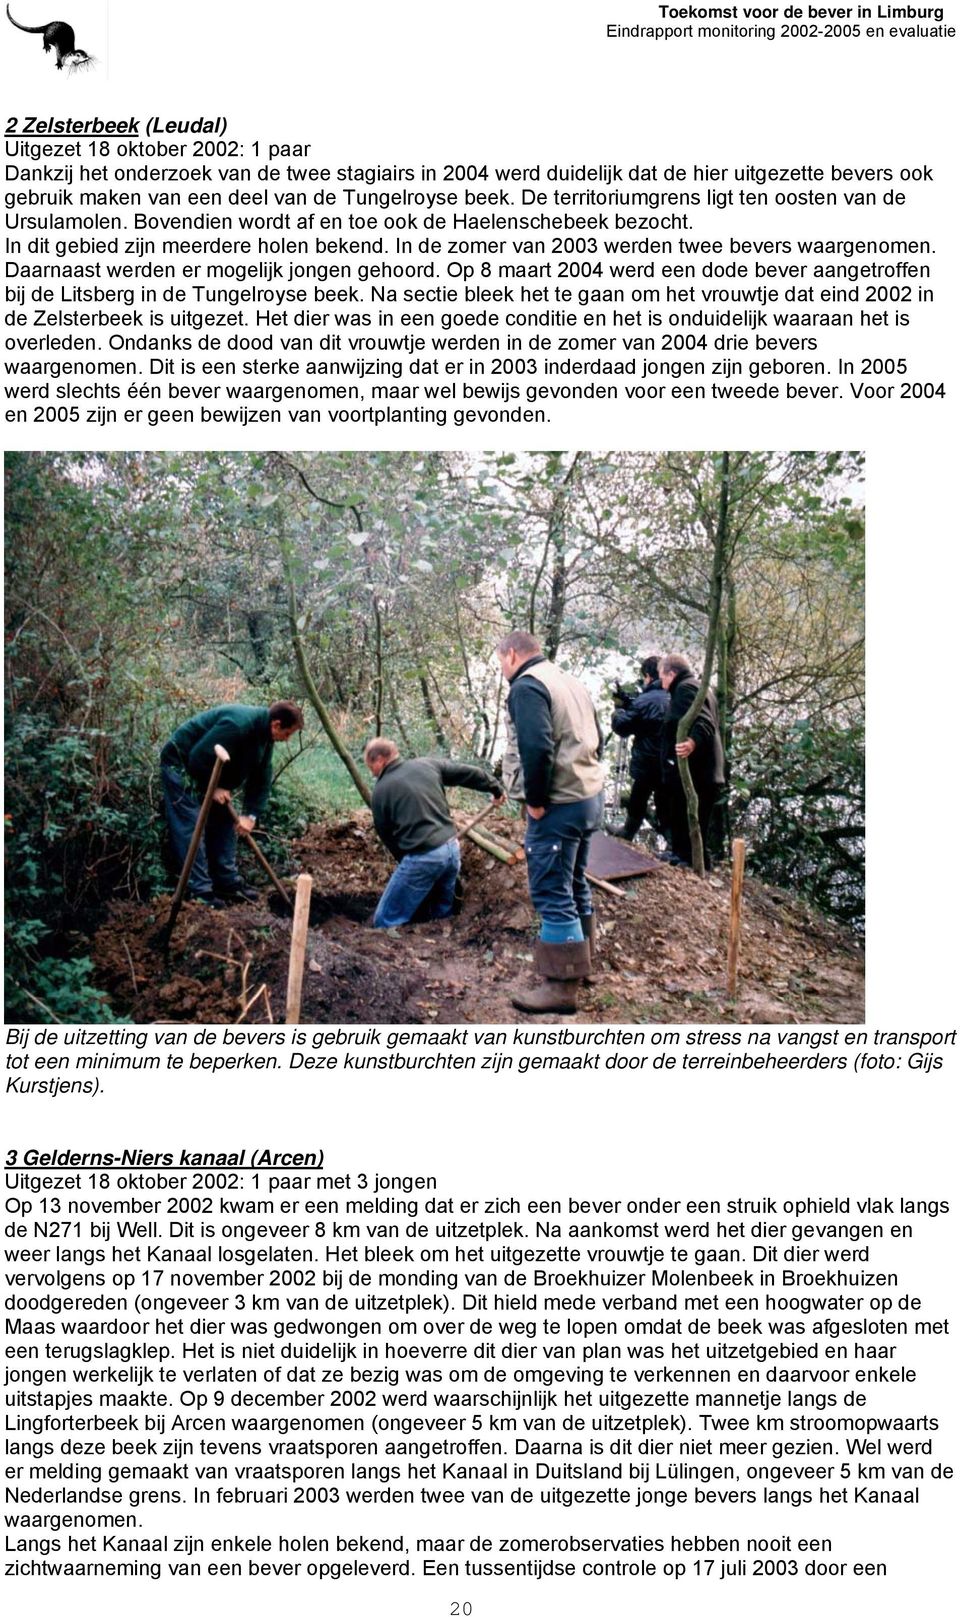 In de zomer van 2003 werden twee bevers waargenomen. Daarnaast werden er mogelijk jongen gehoord. Op 8 maart 2004 werd een dode bever aangetroffen bij de Litsberg in de Tungelroyse beek.